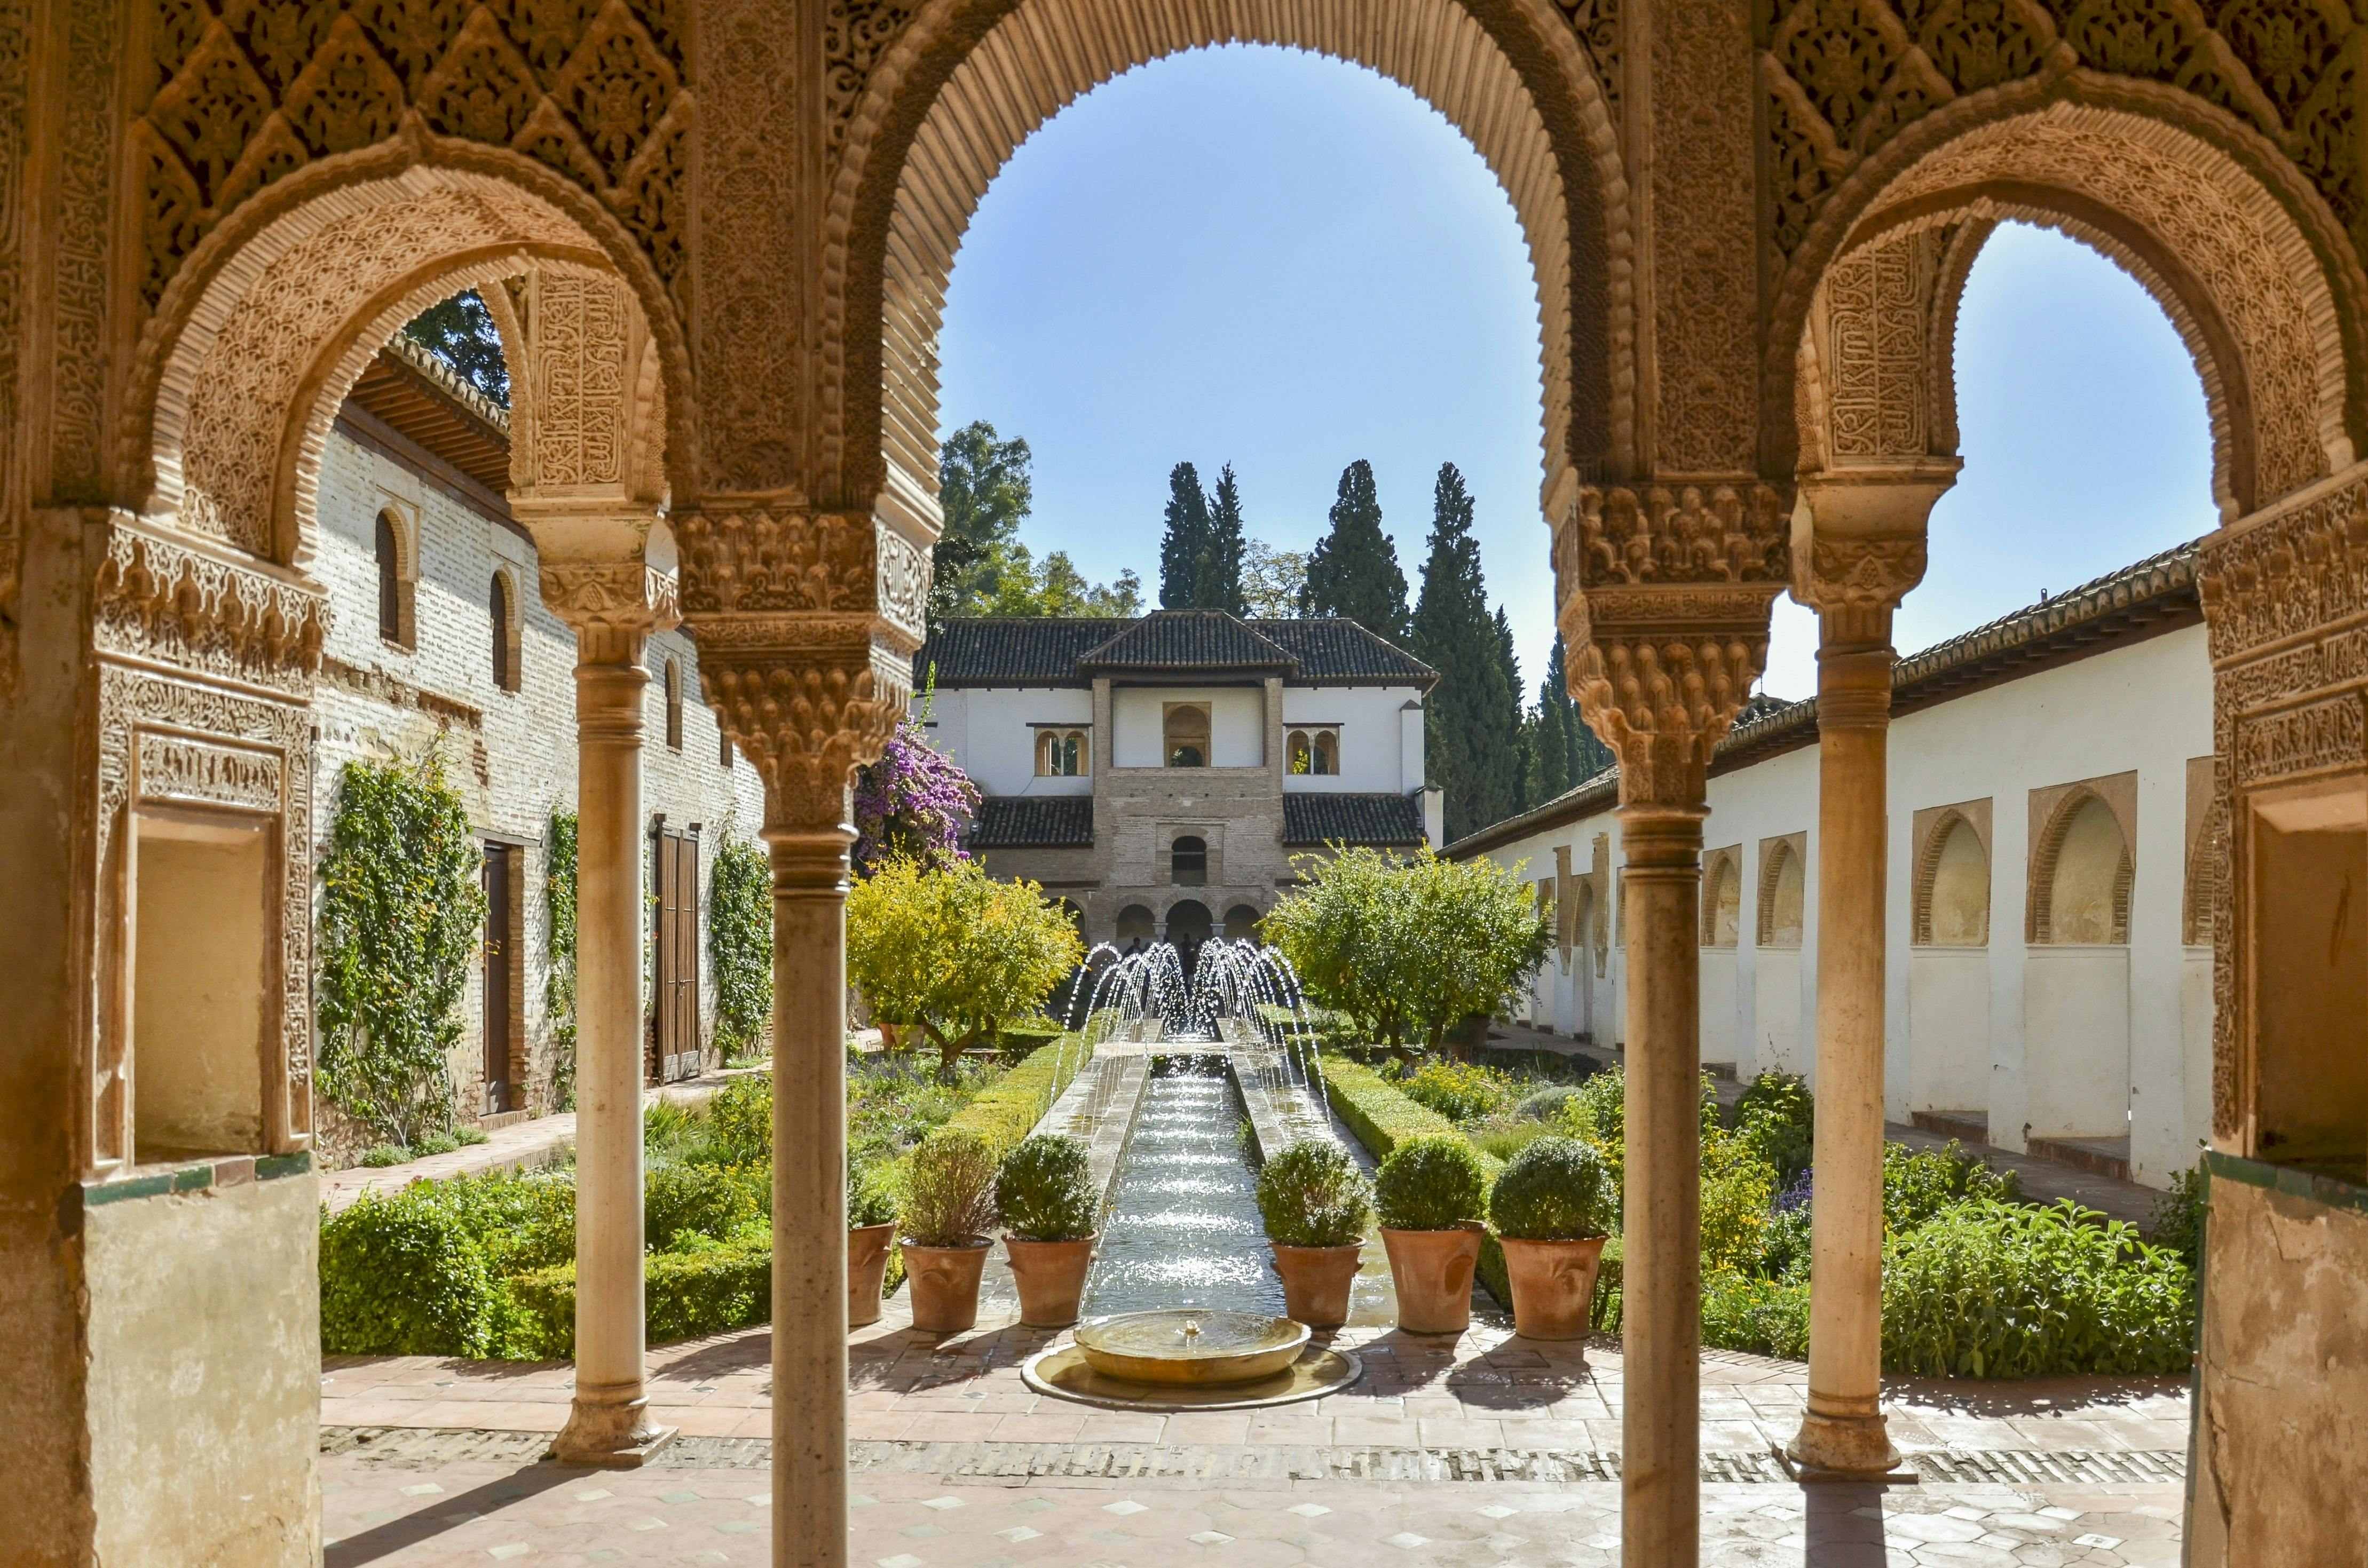 Visita guiada pela Alhambra e entradas para o Parque das Ciências